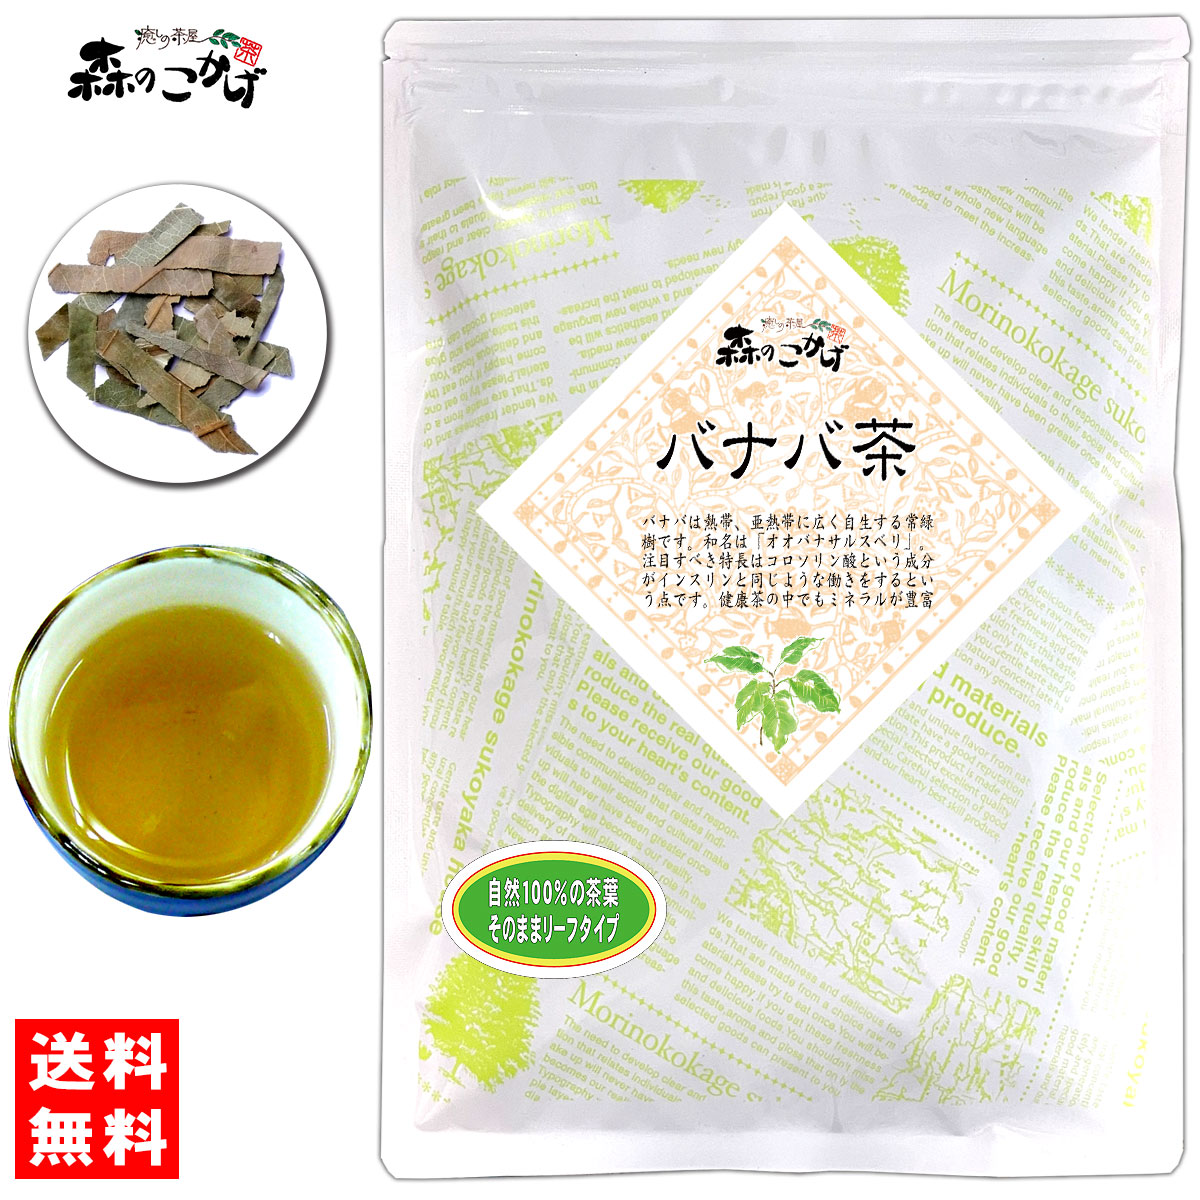 【楽天市場】5【送料無料】 バナバ茶 (150g) 茶葉 ばなば茶 オオバナ ...